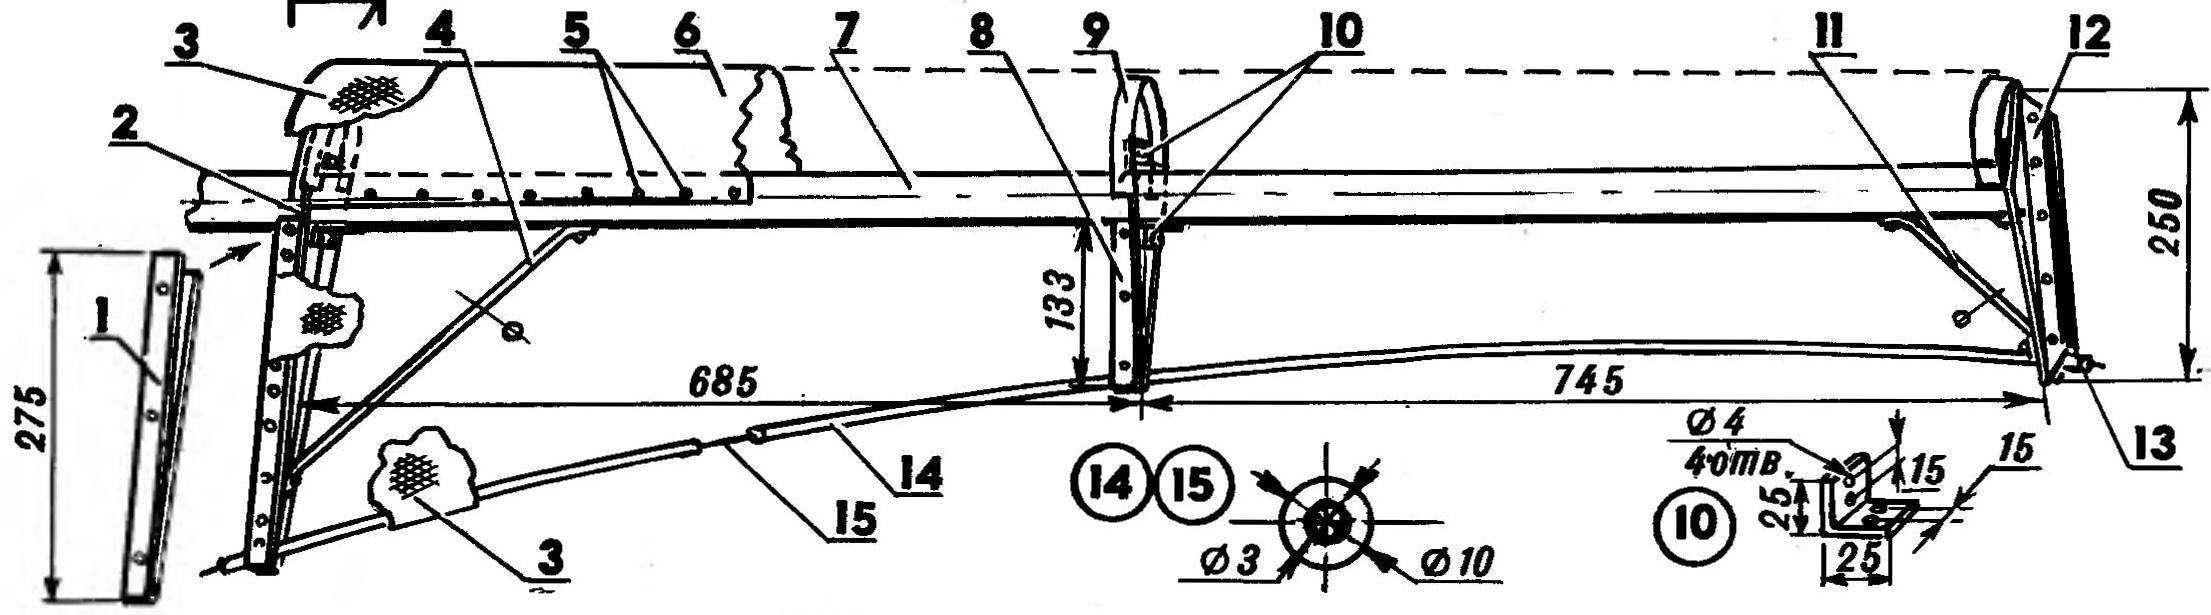 Простой ветрогенератор своими руками: пошаговая инструкция как сделать ветряк (120 фото)